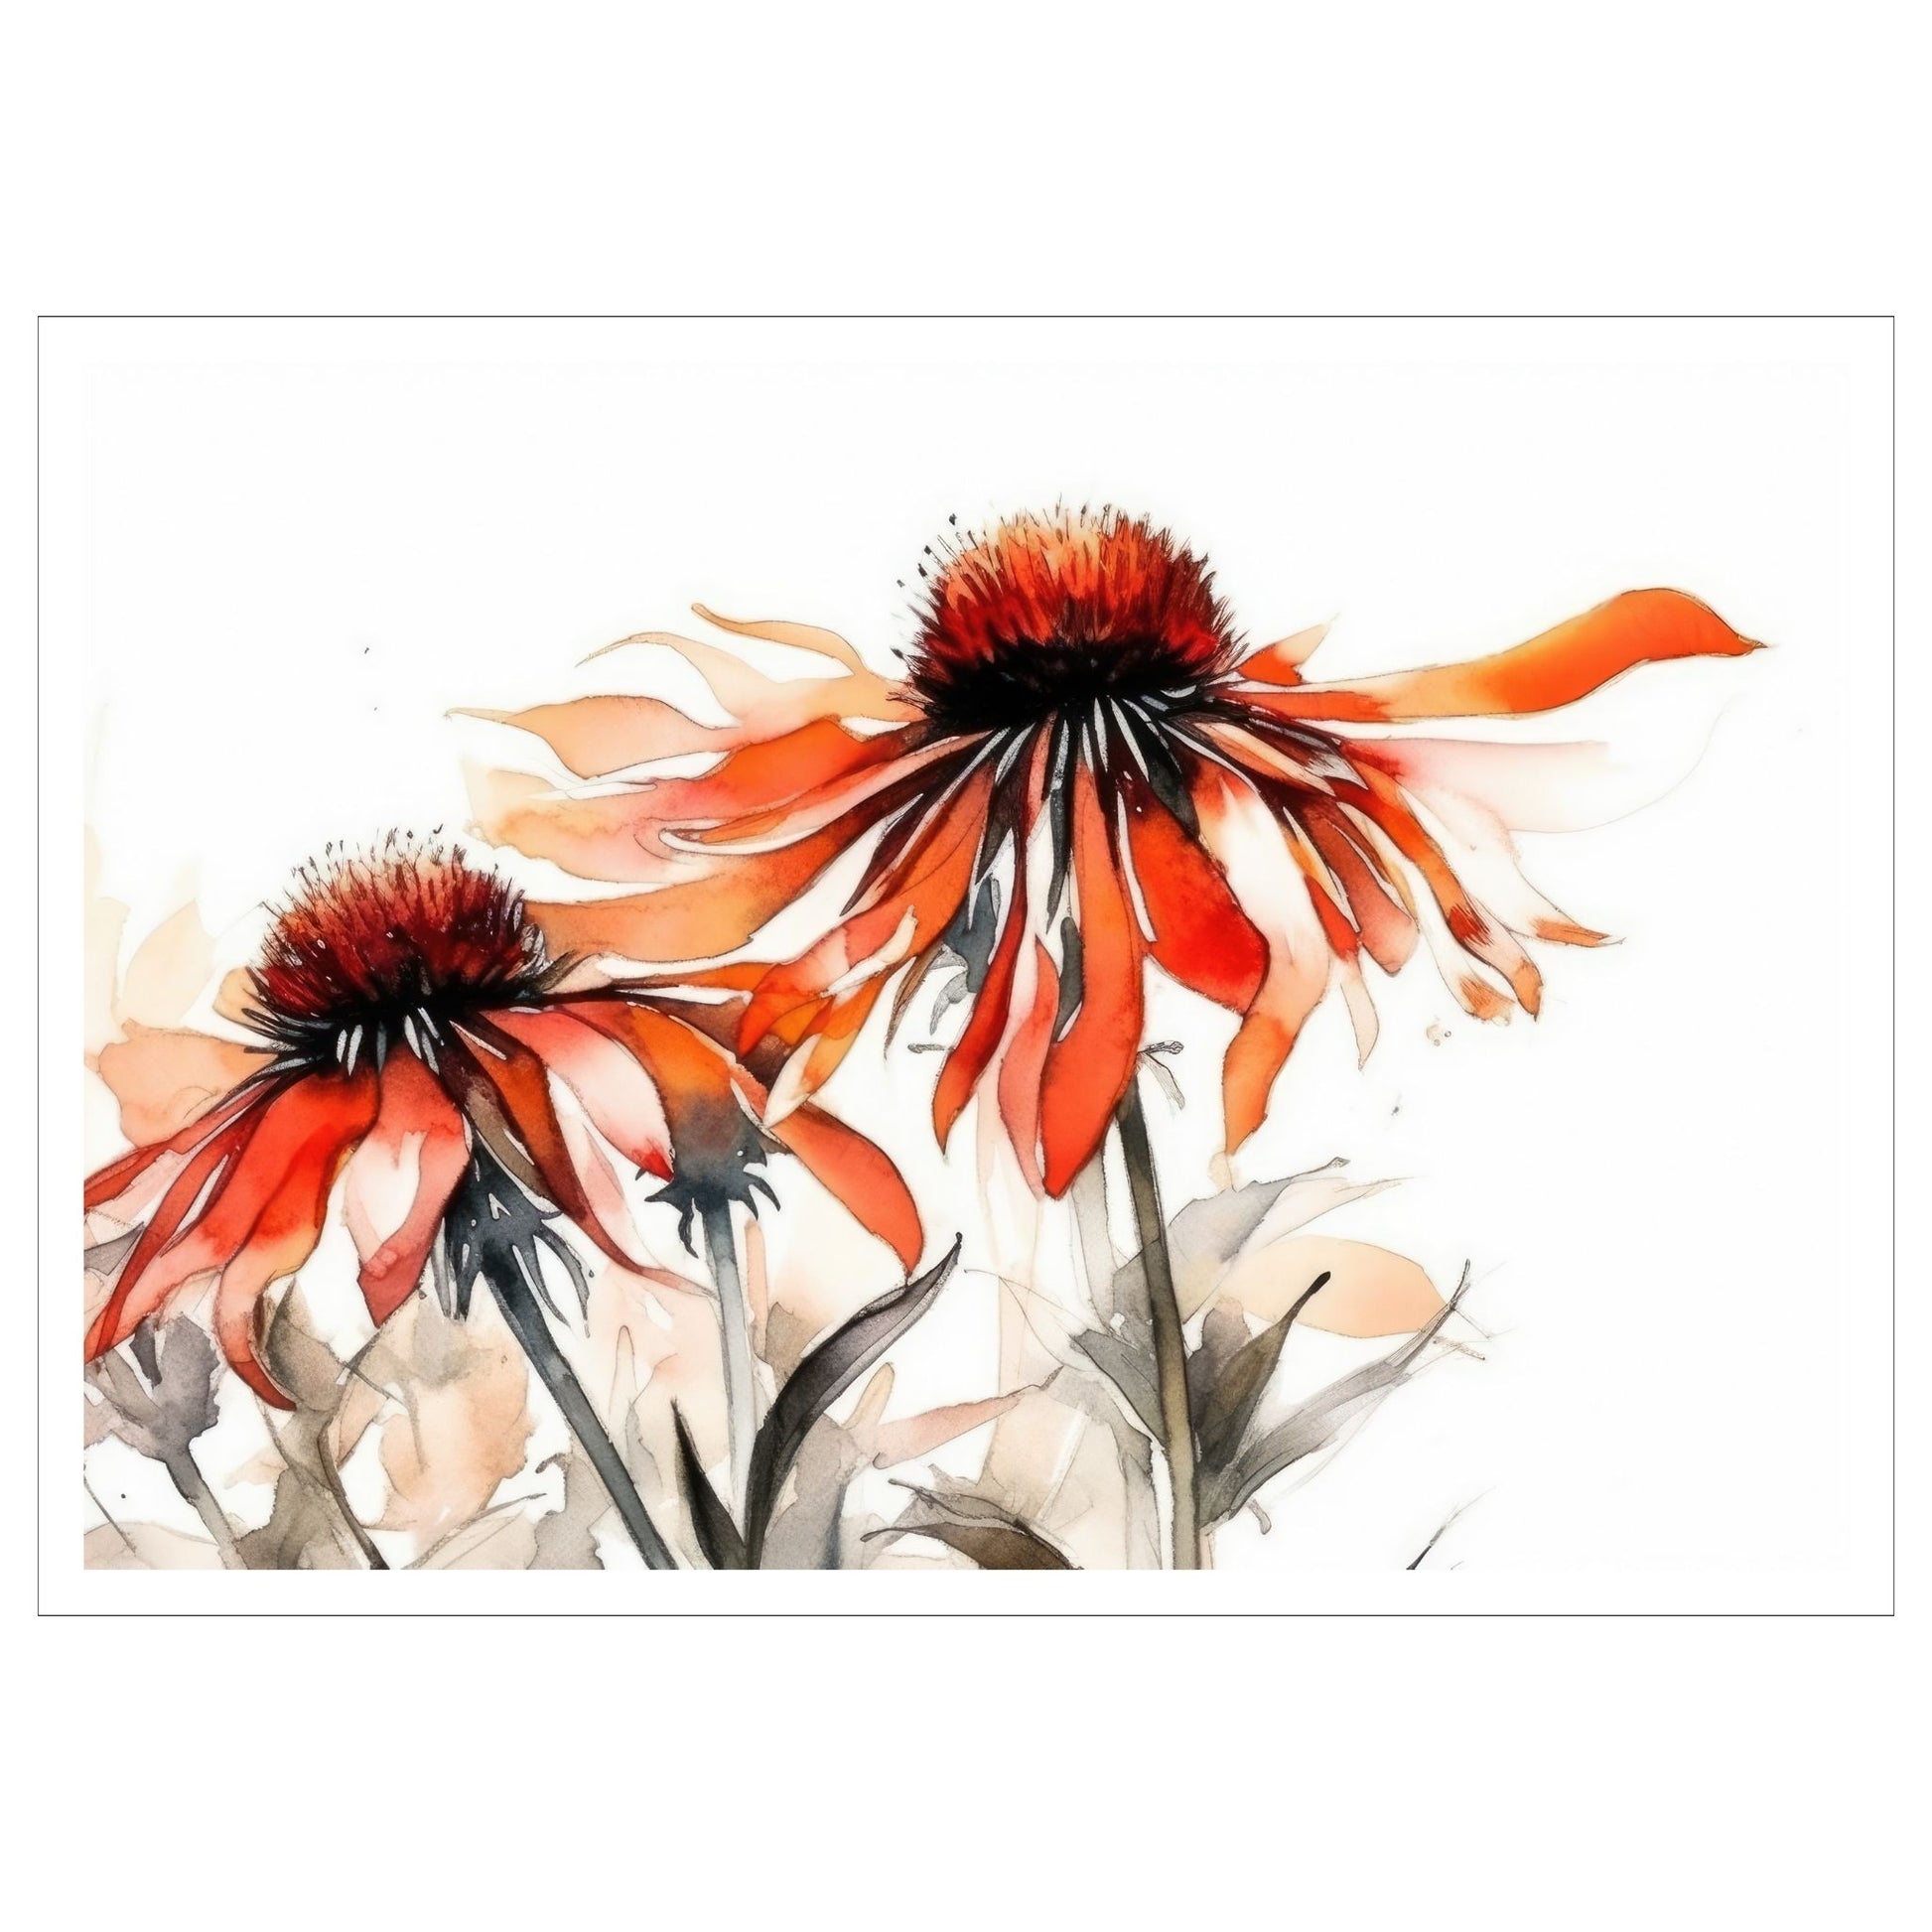 Nydelig abstrakt motiv av Solhattblomster. Blomstene er i rød-oransje nyanser. Dette er en grafisk fremstilling på plakat. Plakaten trykkes med en hvit kant rundt.